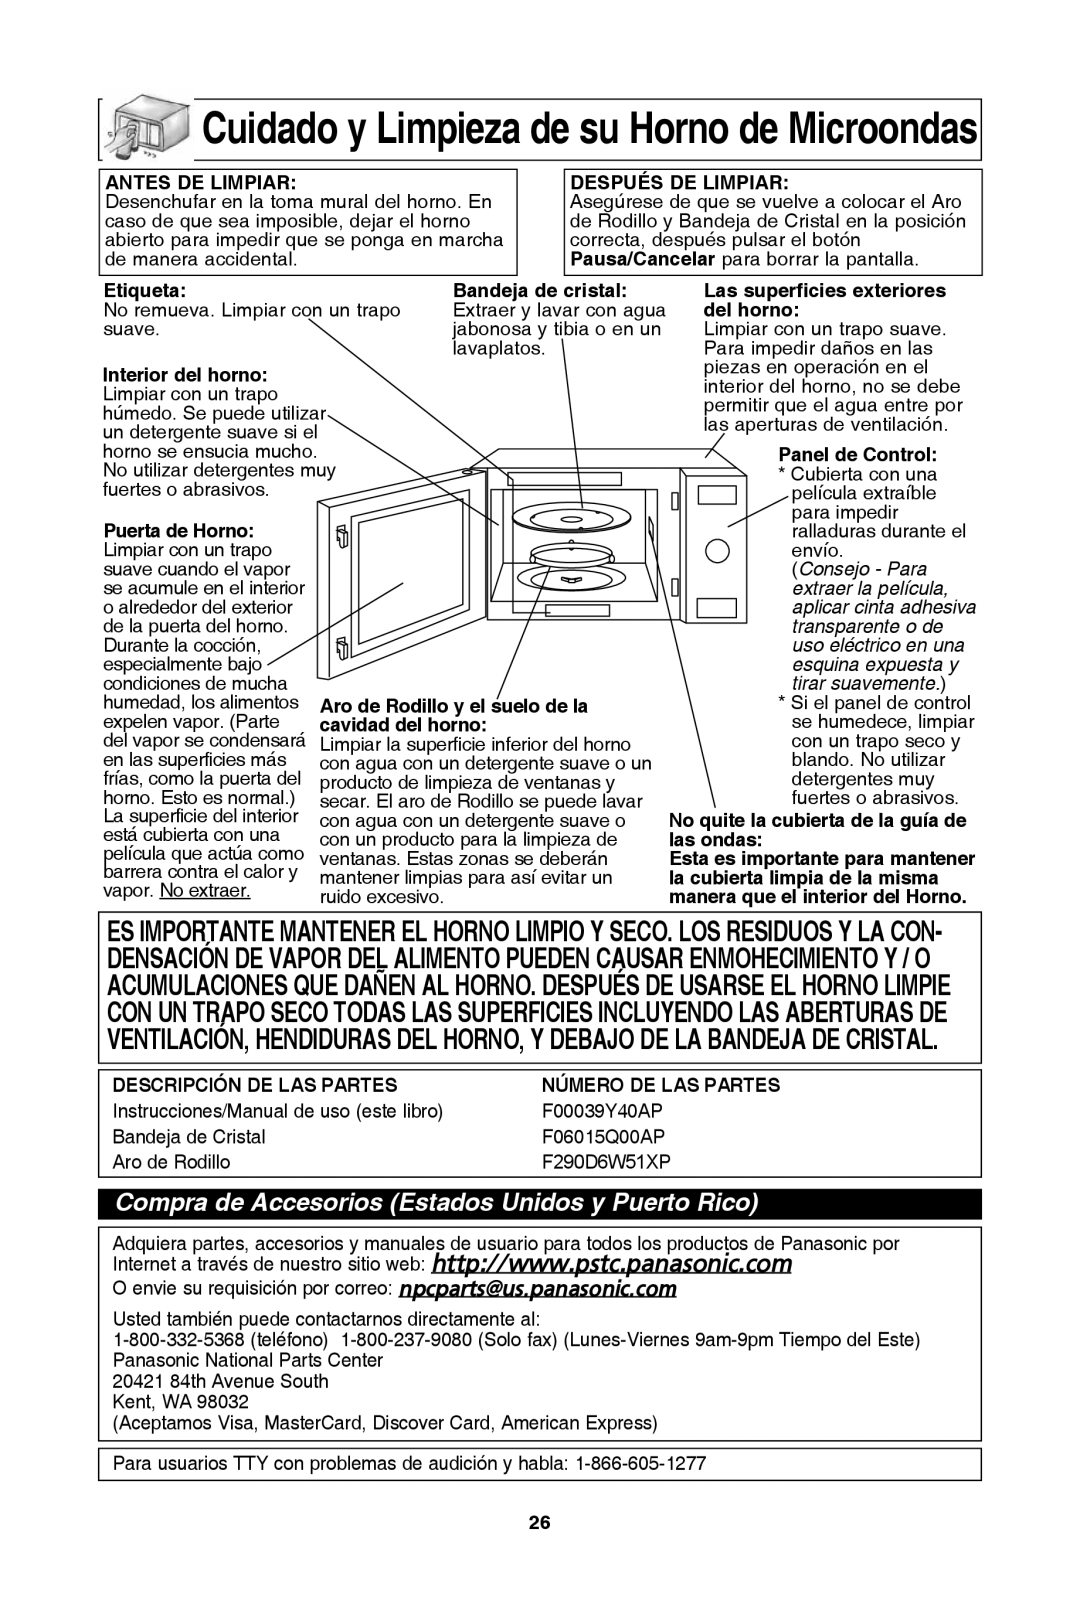 Panasonic NN-SD654W cuidado y limpieza de su horno de Microondas, Compra de Accesorios Estados Unidos y Puerto rico 